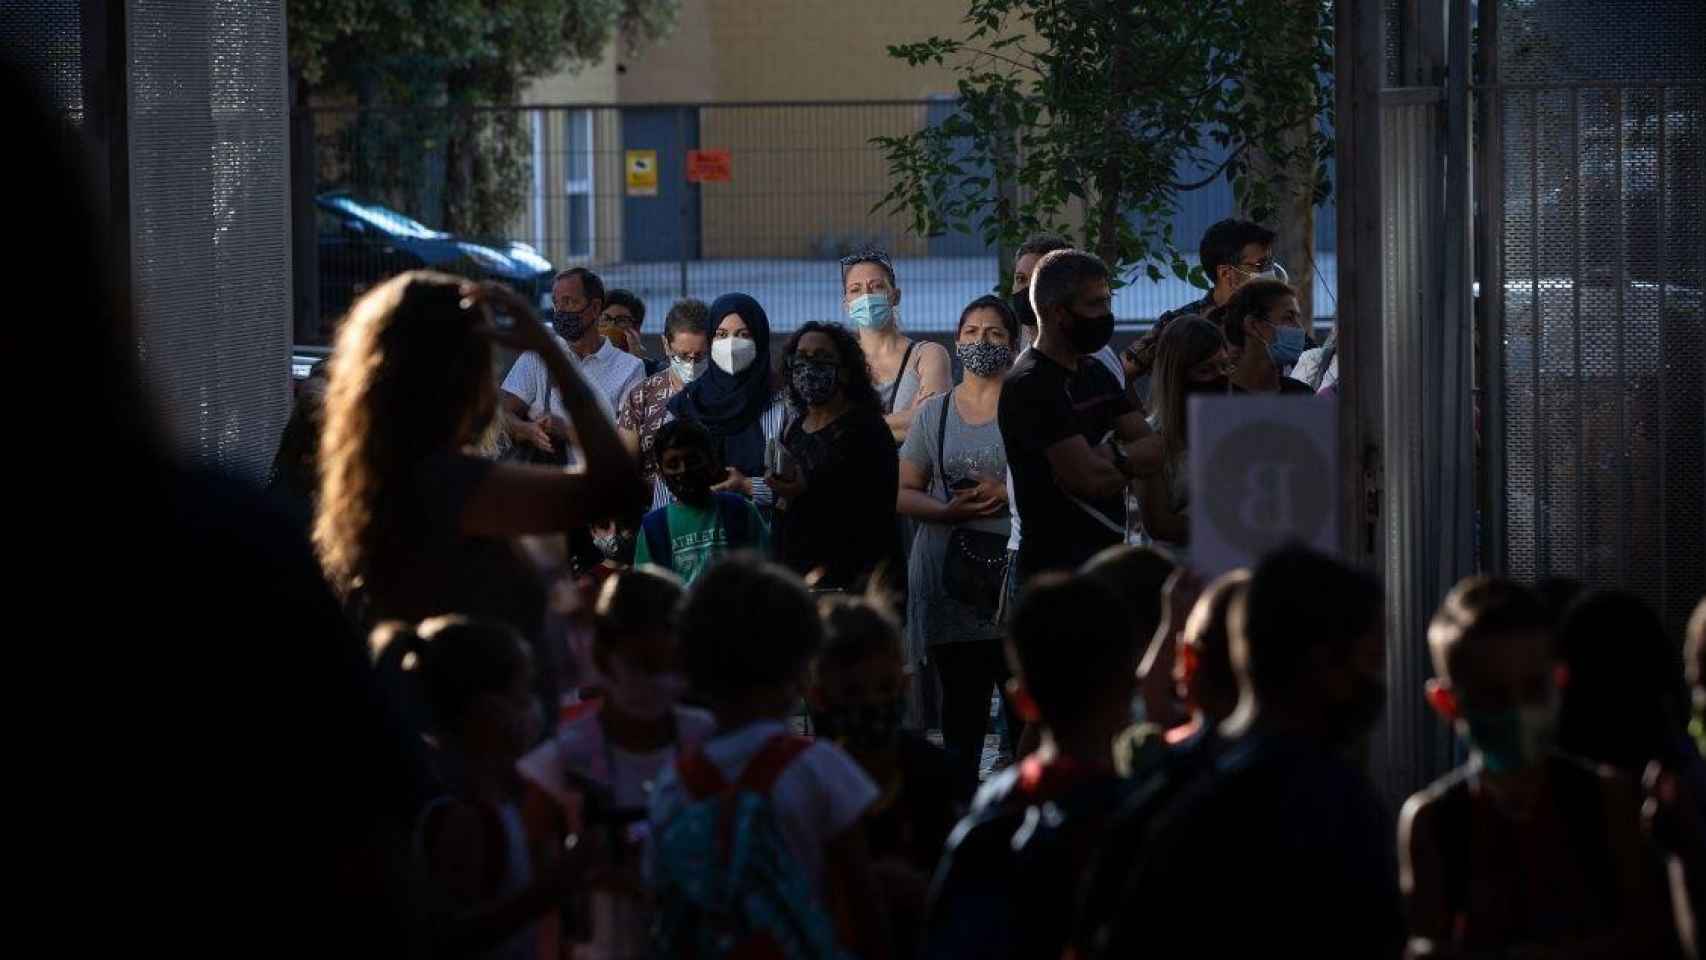 Padres y alumnos esperan a las puertas de un colegio en Cataluña, donde el nuevo curso escolar arranca este lunes / David Zorrakino (EP)